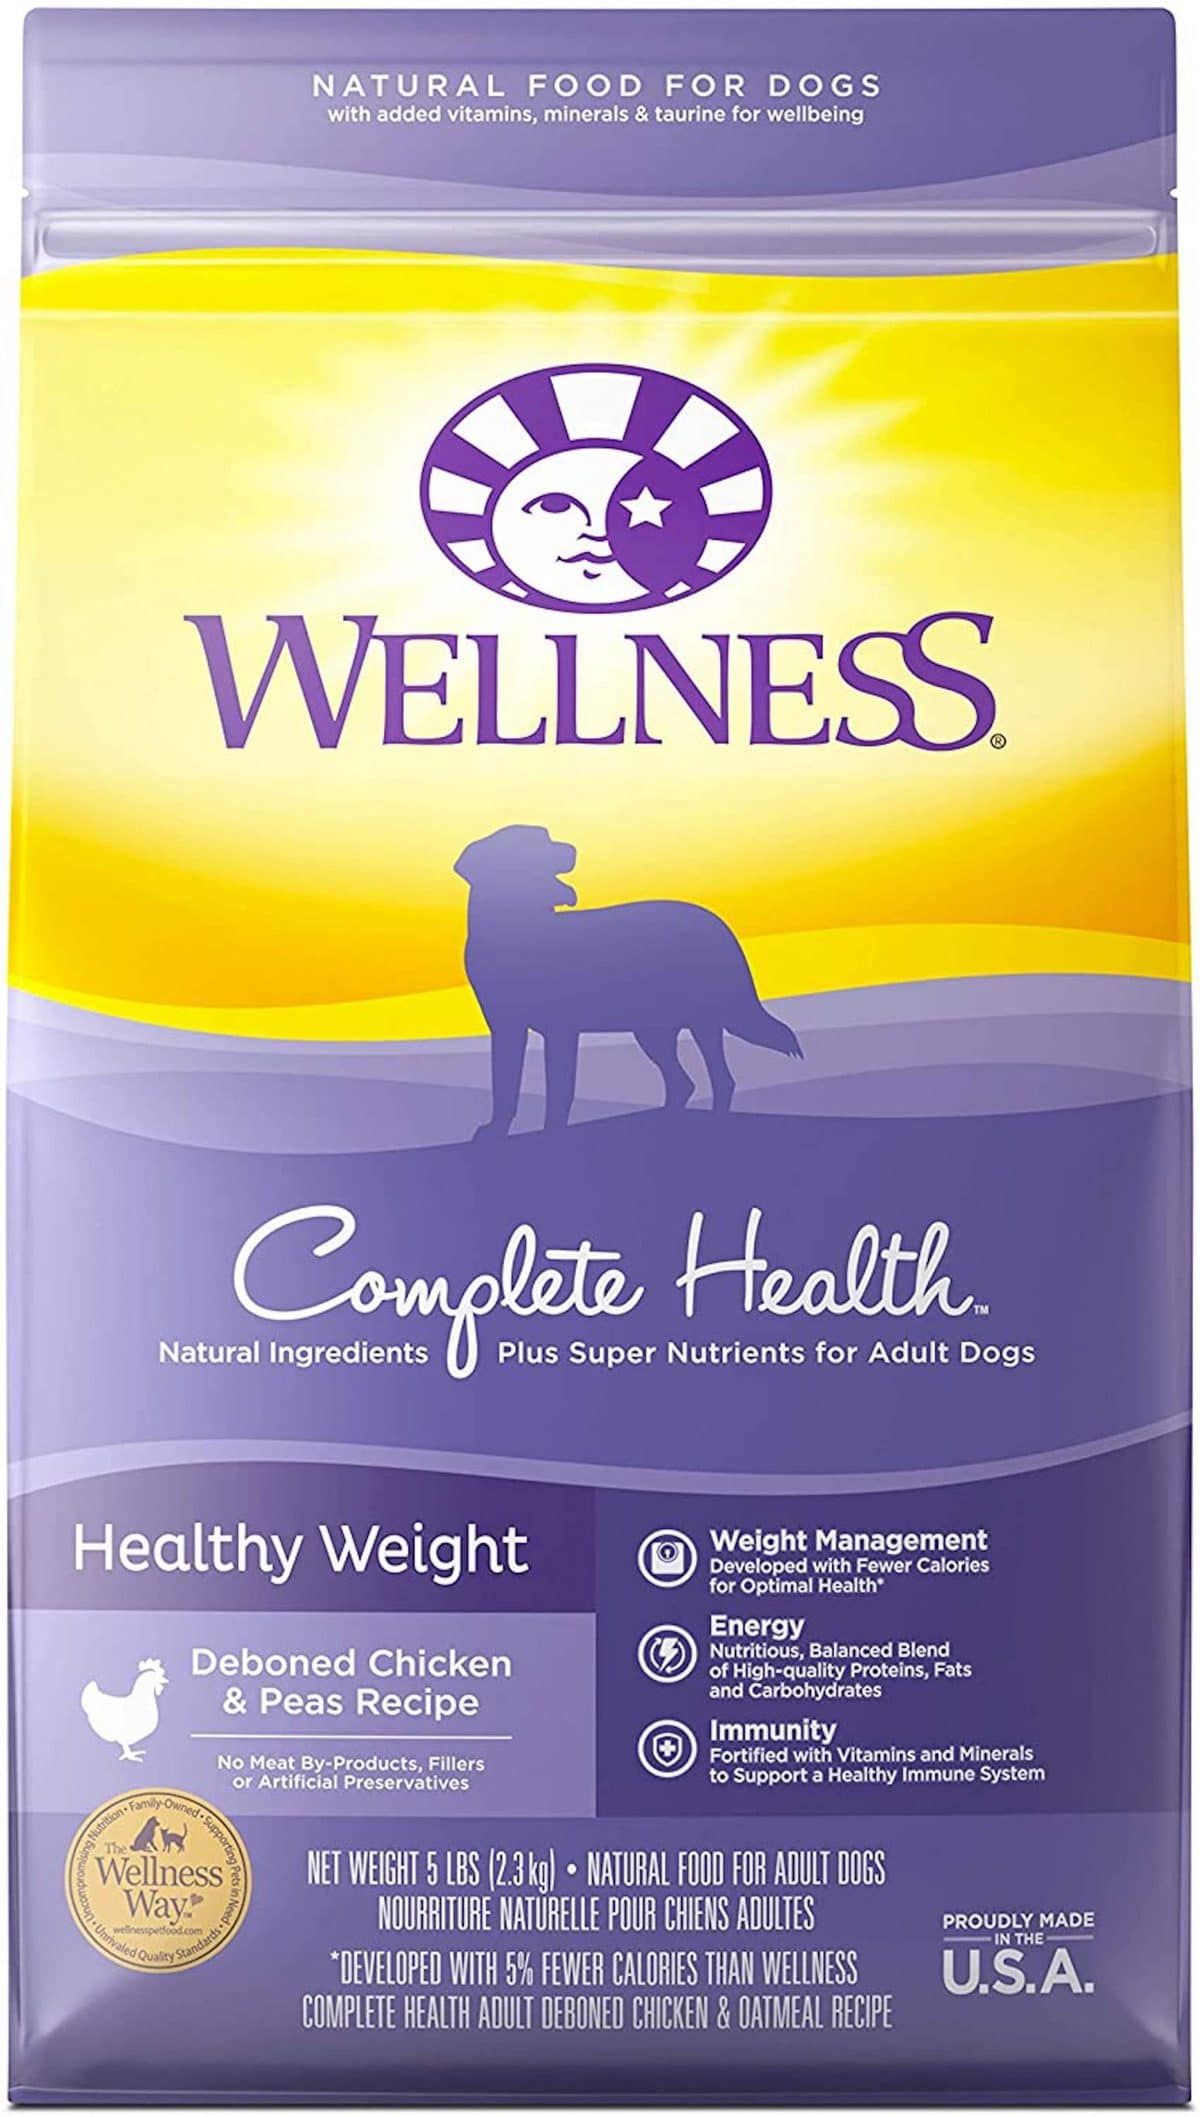 Wellness Complete Health Comida para perros con peso saludable